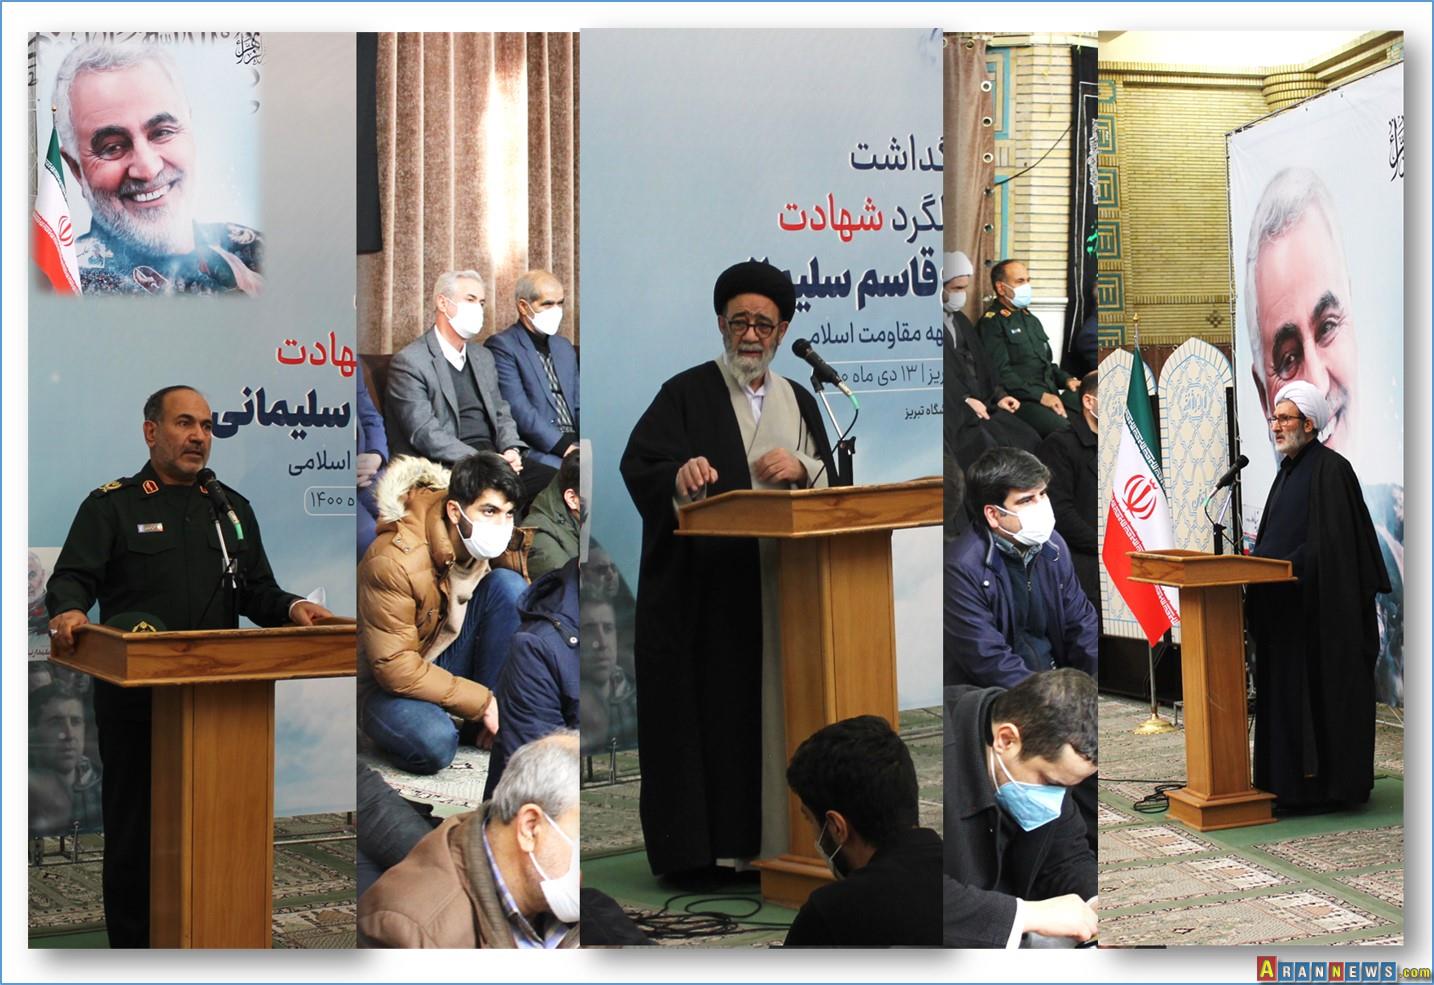 برگزاری مراسم دومین سالگرد شهادت شهید سلیمانی در دانشگاه تبریز - تصاویر